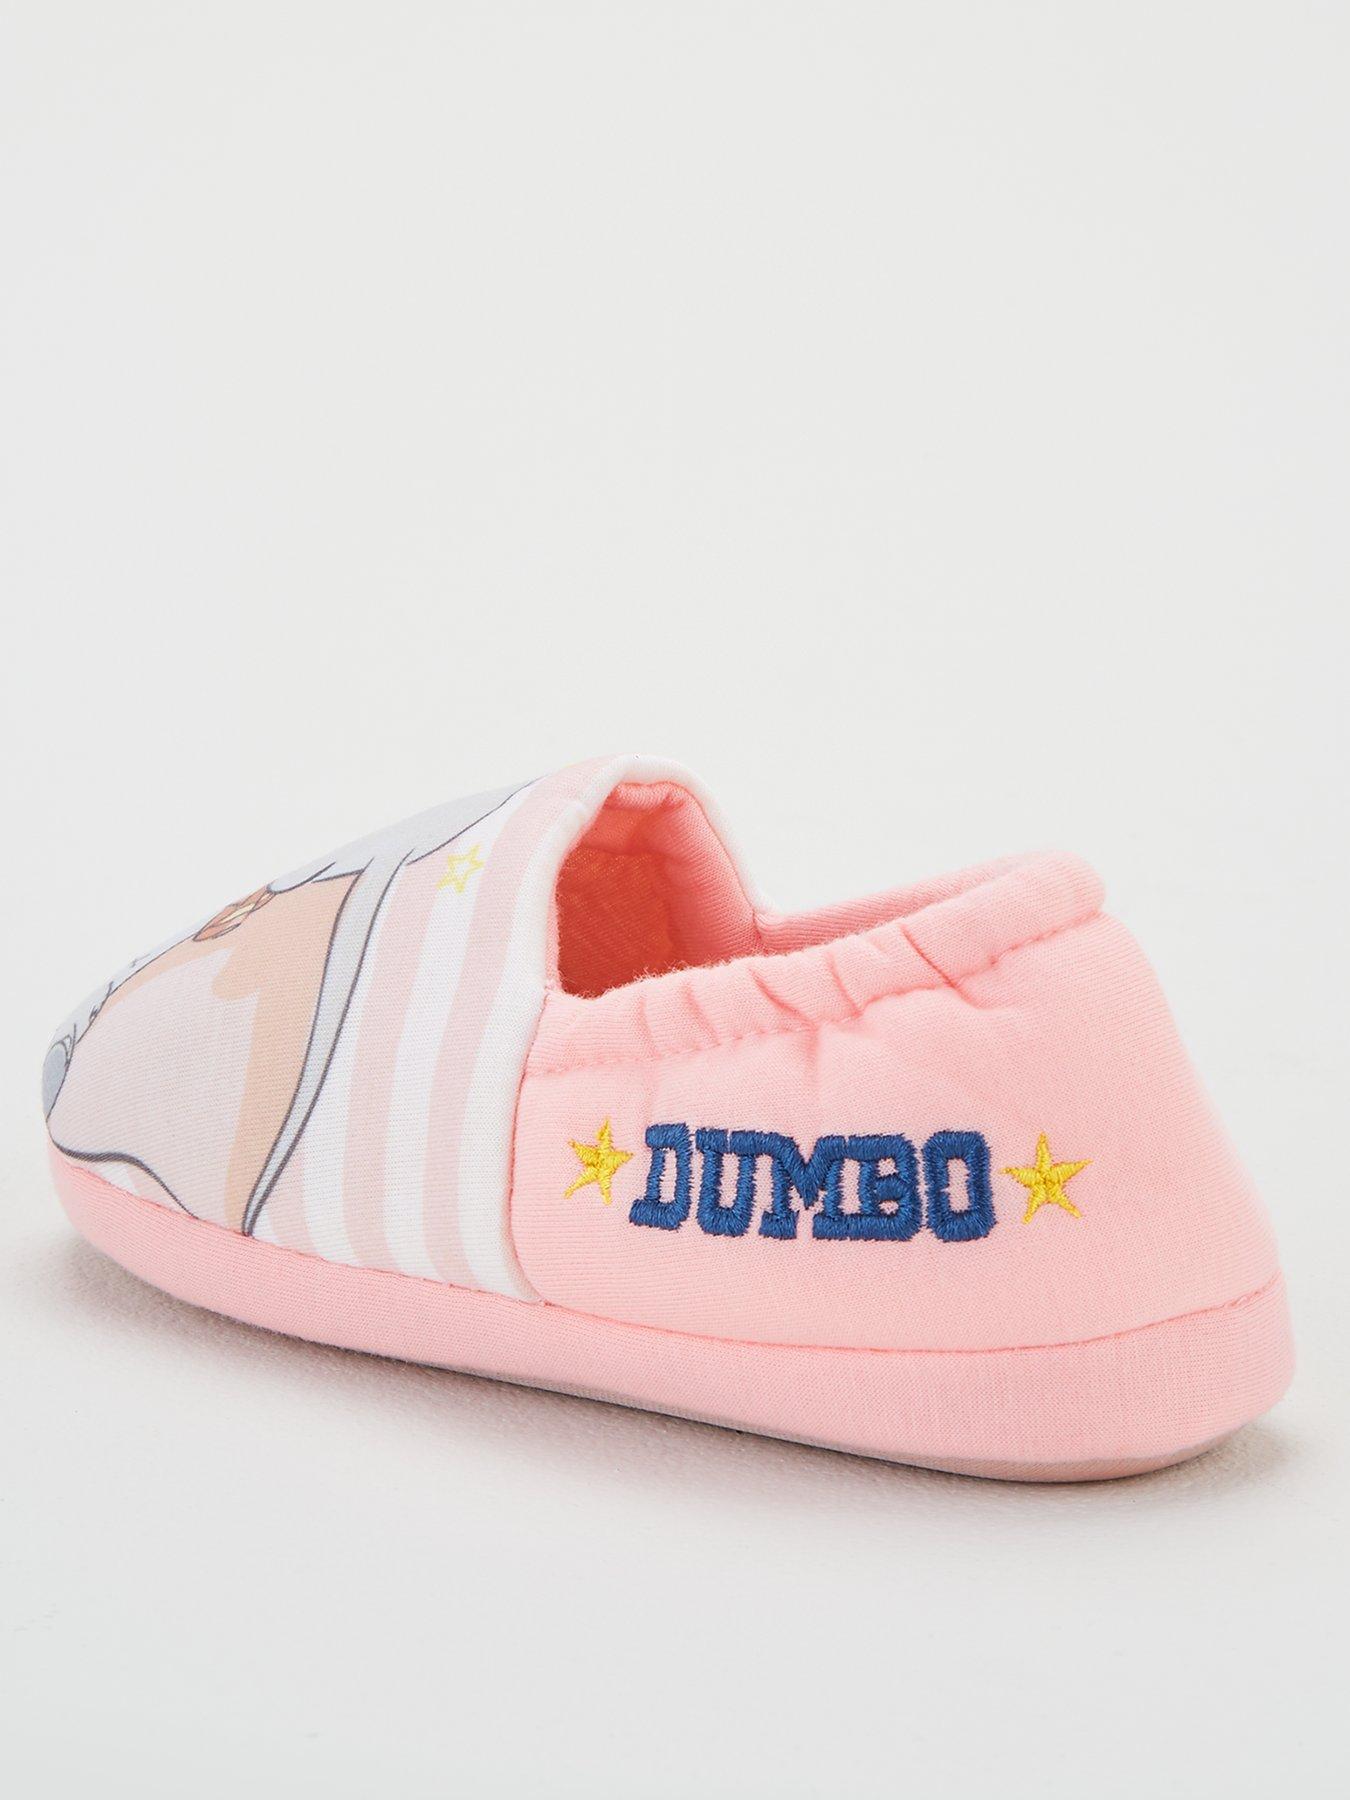 dumbo slippers